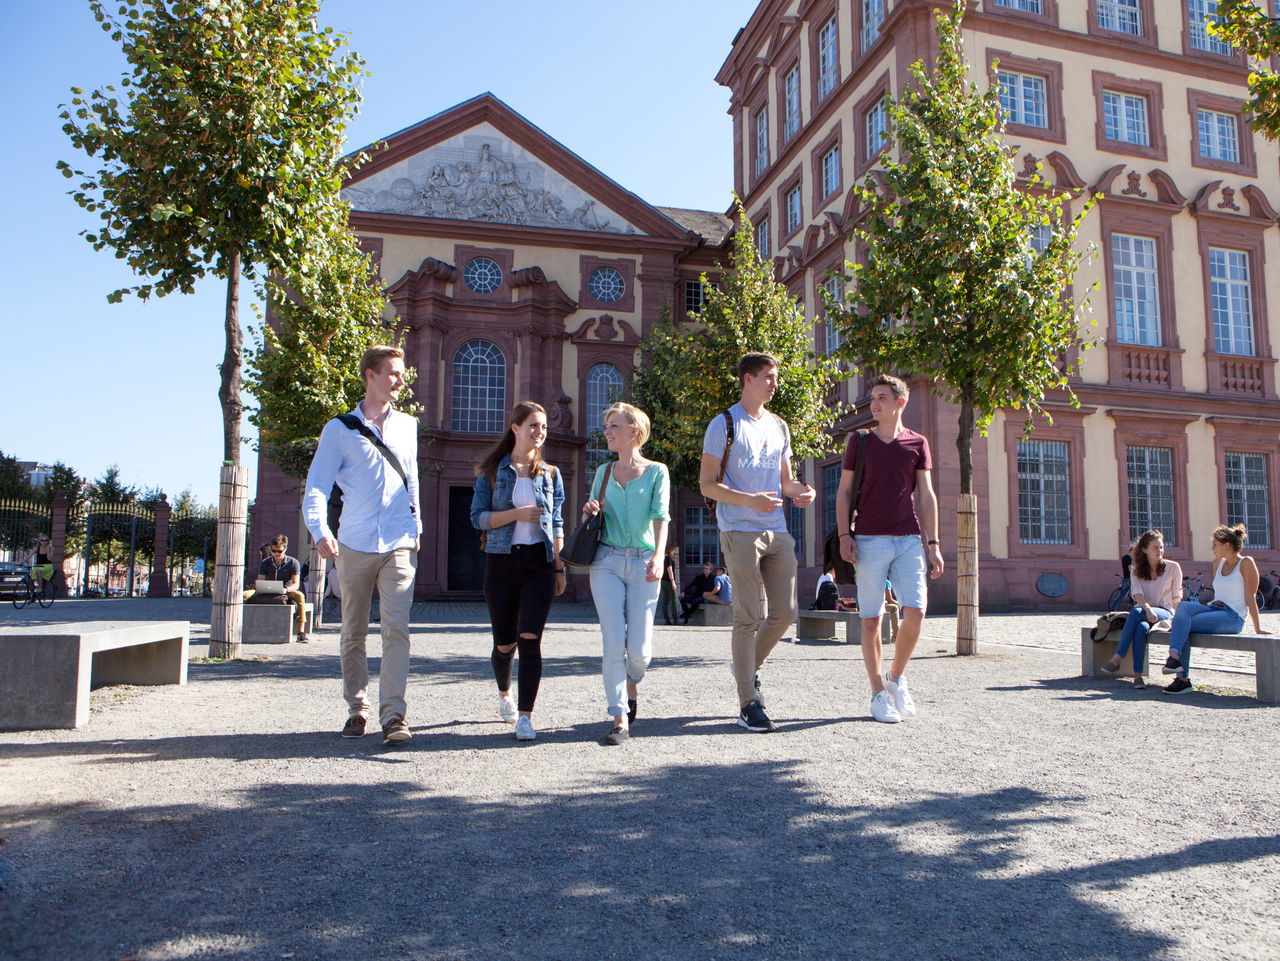 Studierende laufen bei Sonnenschein über den Ehrenhof des Schlosses.